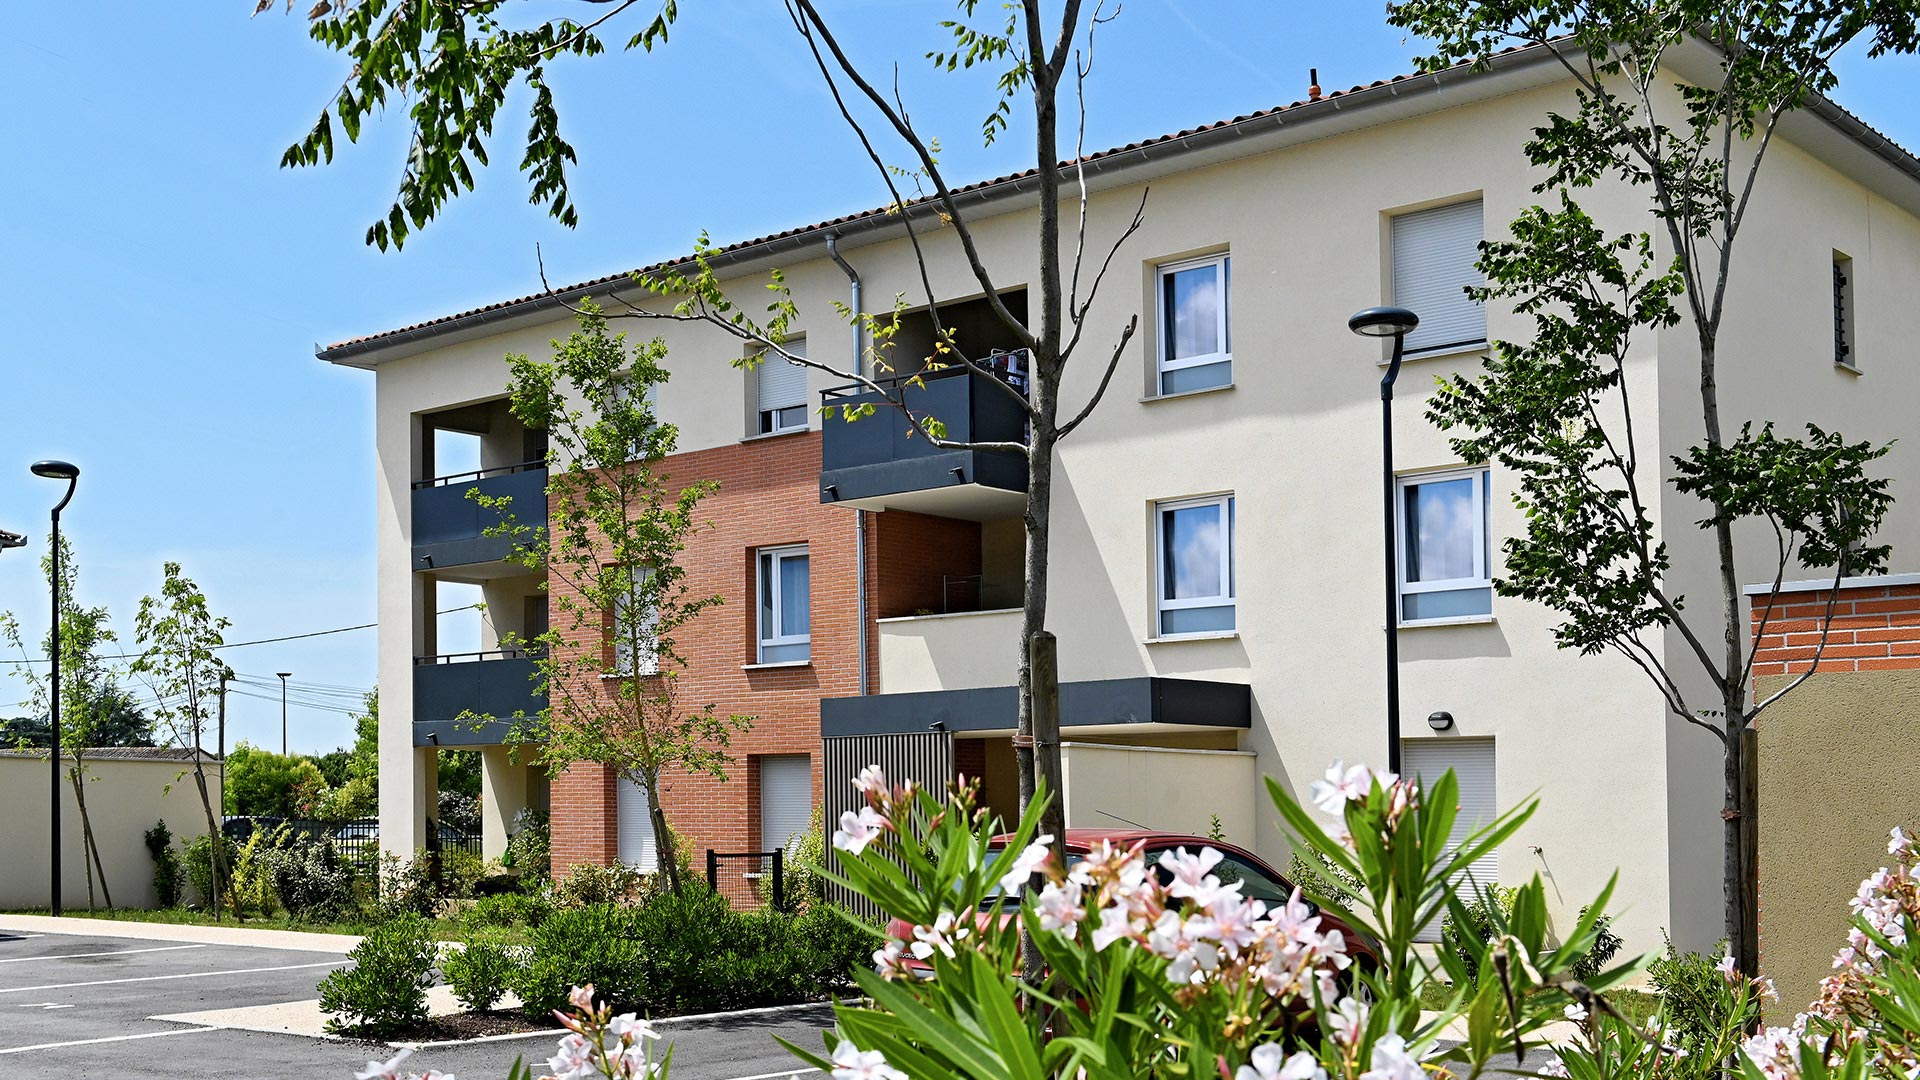 Logements agréables à vivre dans copropriété avec espaces verts à Saint-Jory.